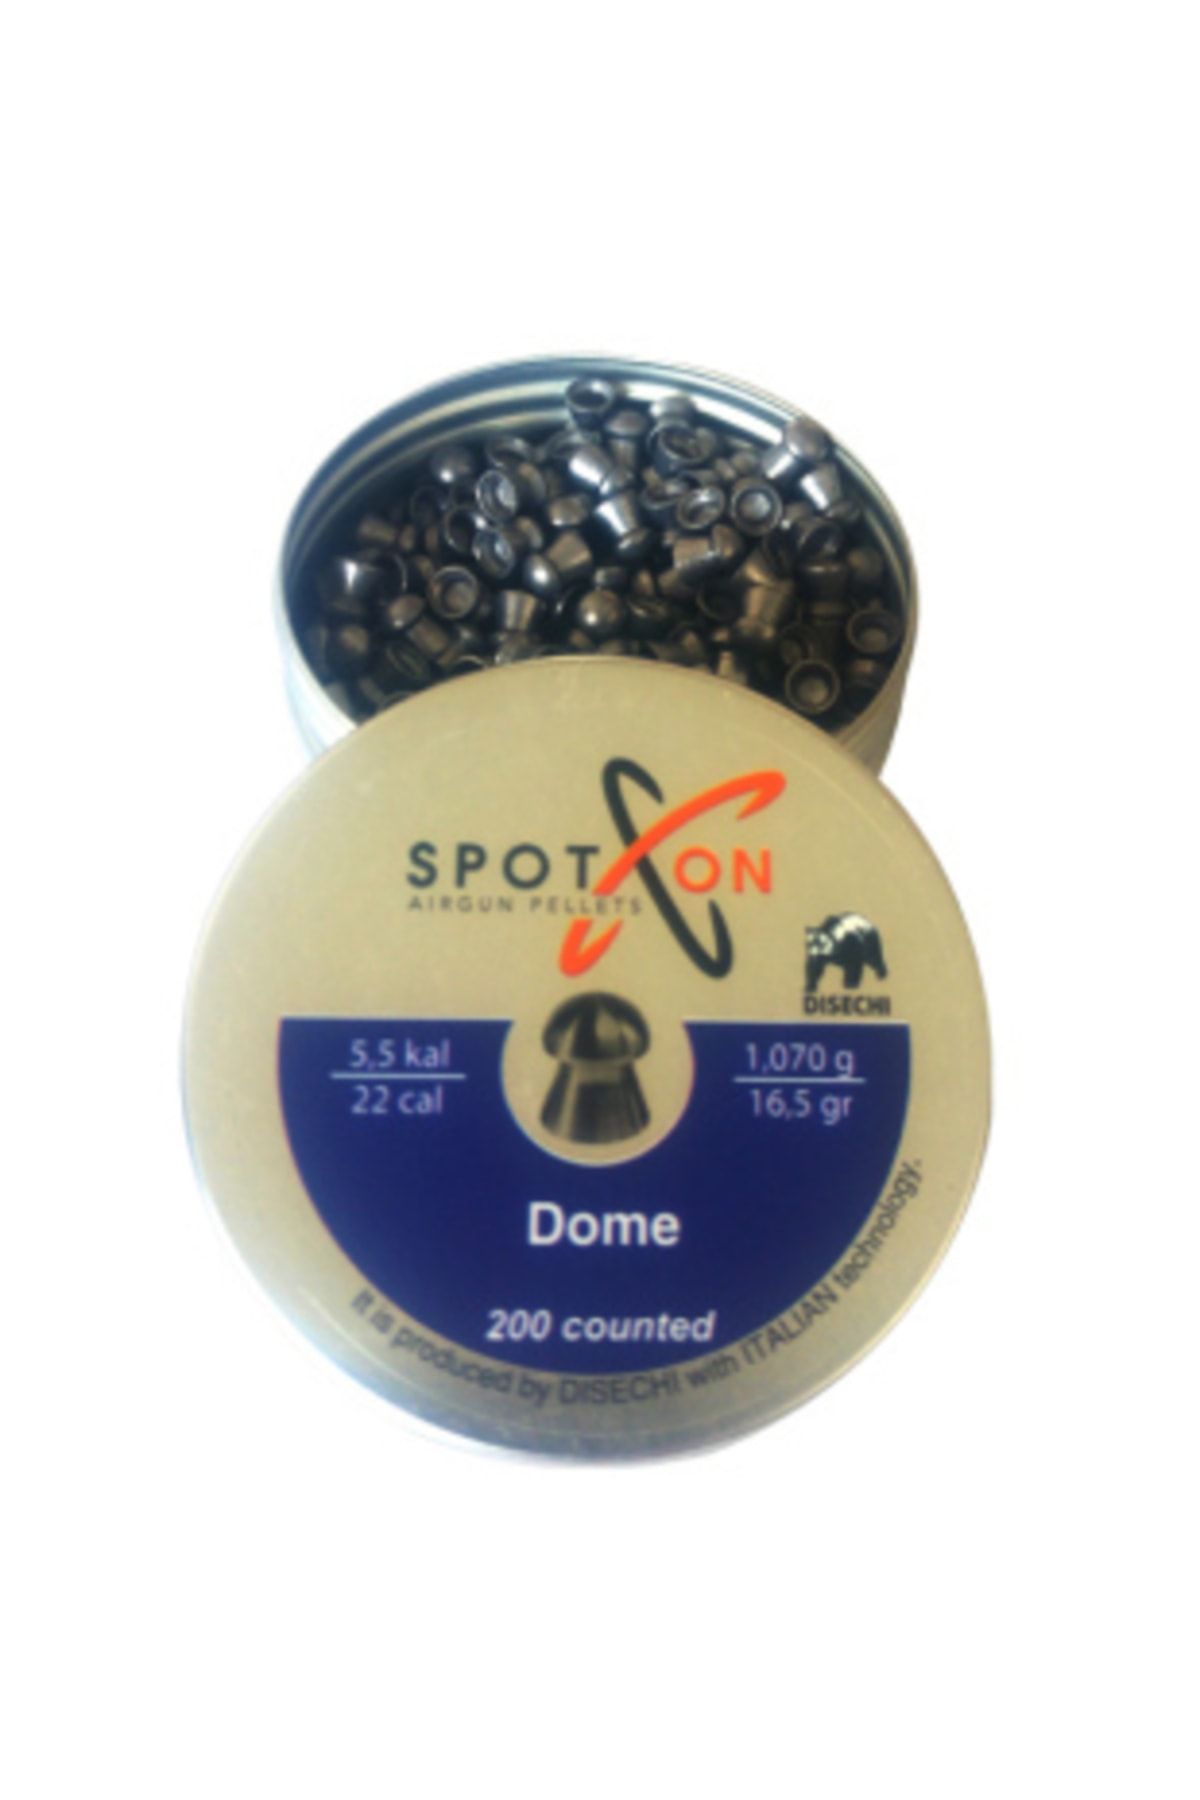 Spoton Dome 5,5mm 16,5gr Pellet (KOCA AV PAZARI)